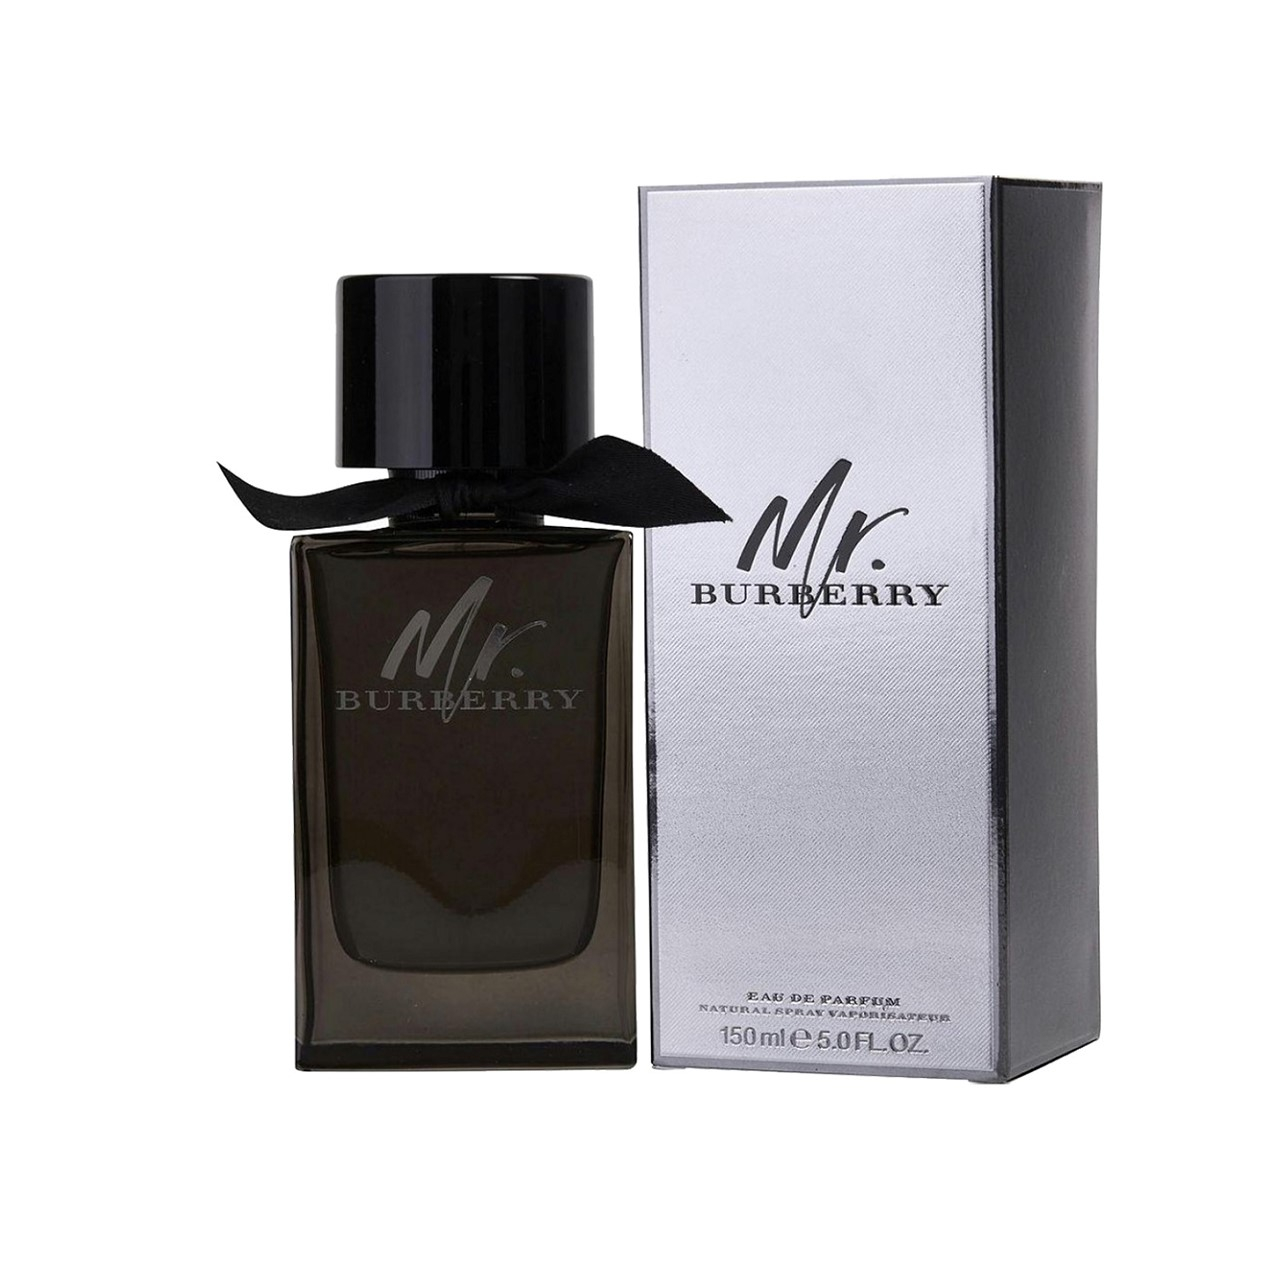 Burberry Mr. Burberry Eau de Parfum 150ml (5.1fl oz)